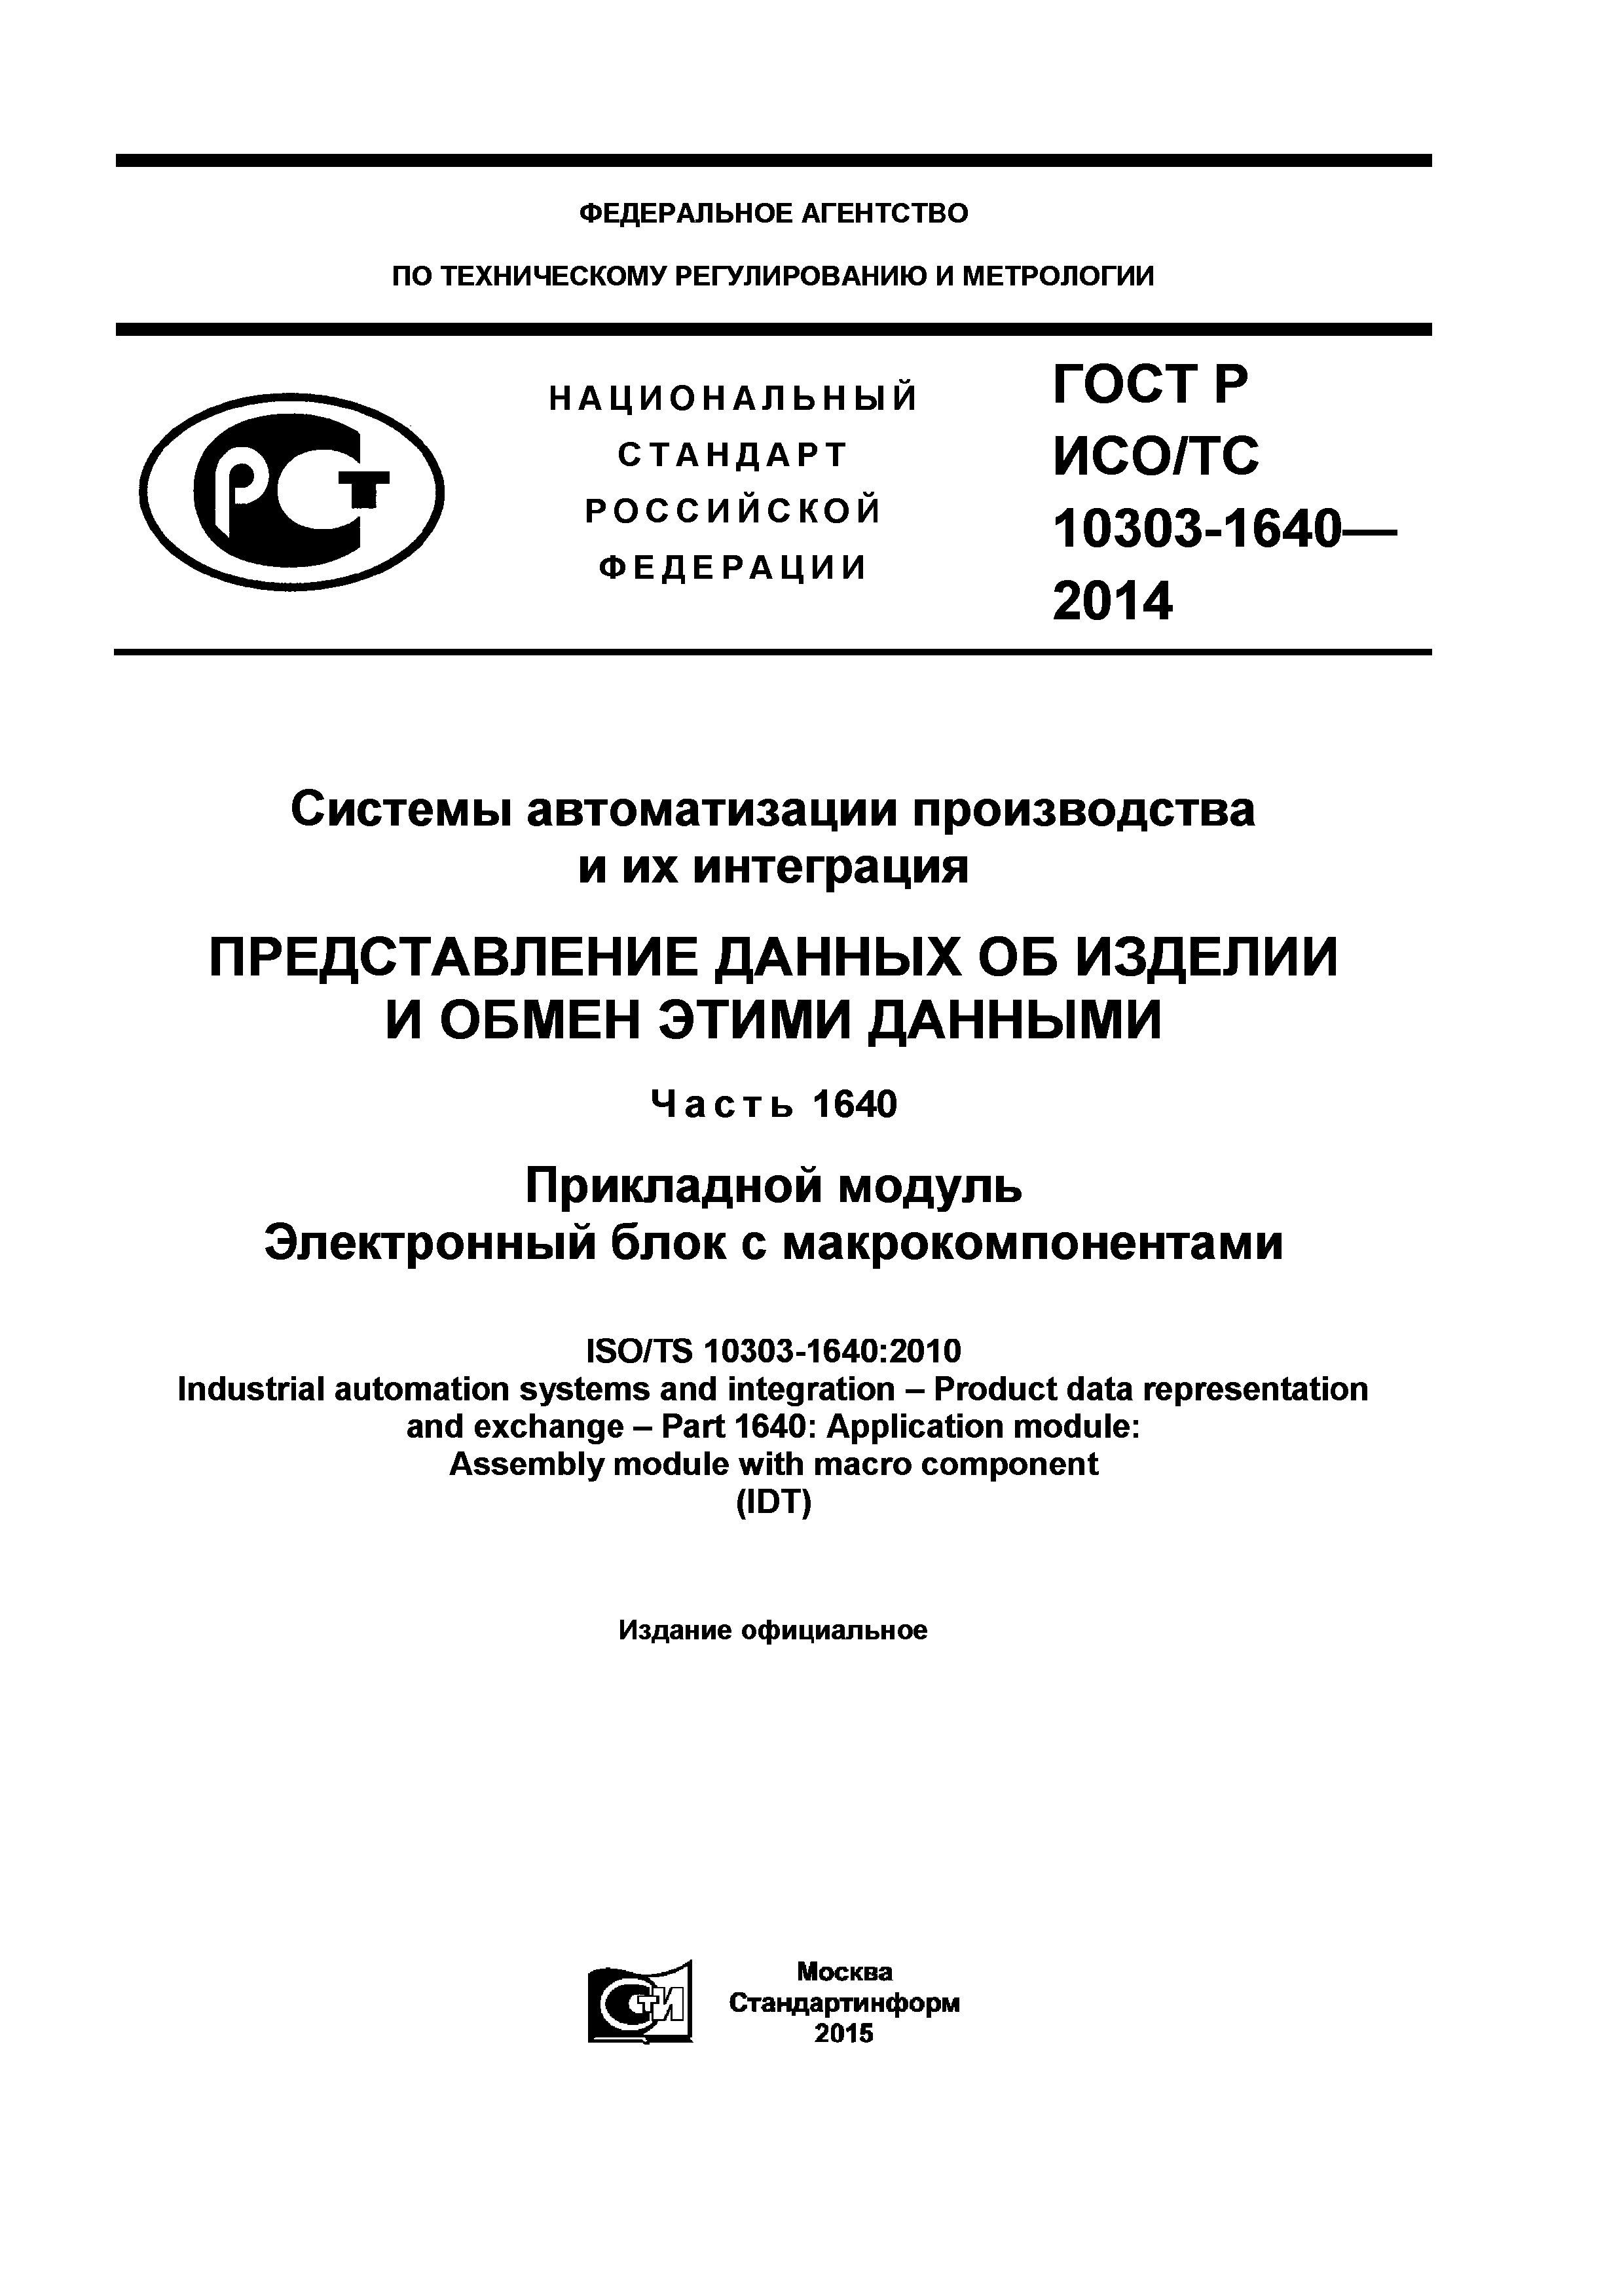 ГОСТ Р ИСО/ТС 10303-1640-2014